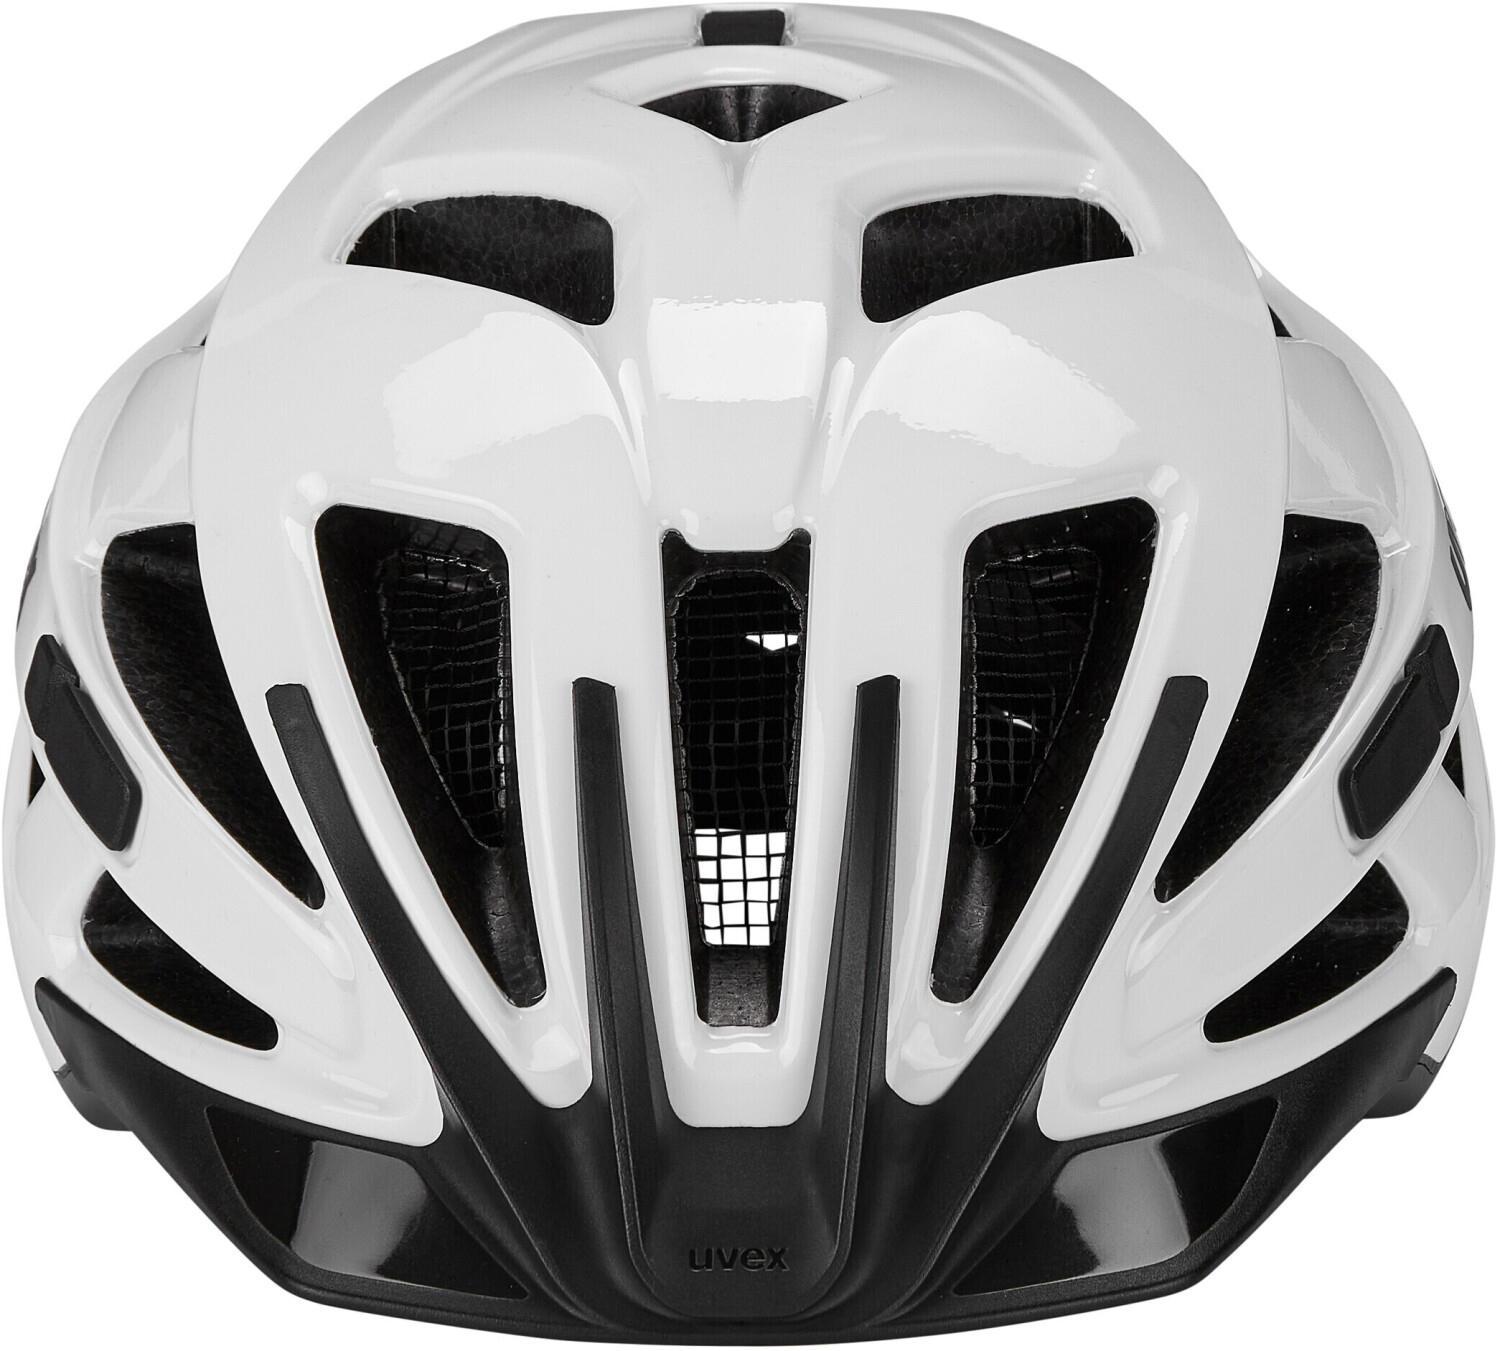 Photos - Bike Helmet UVEX Active helmet 